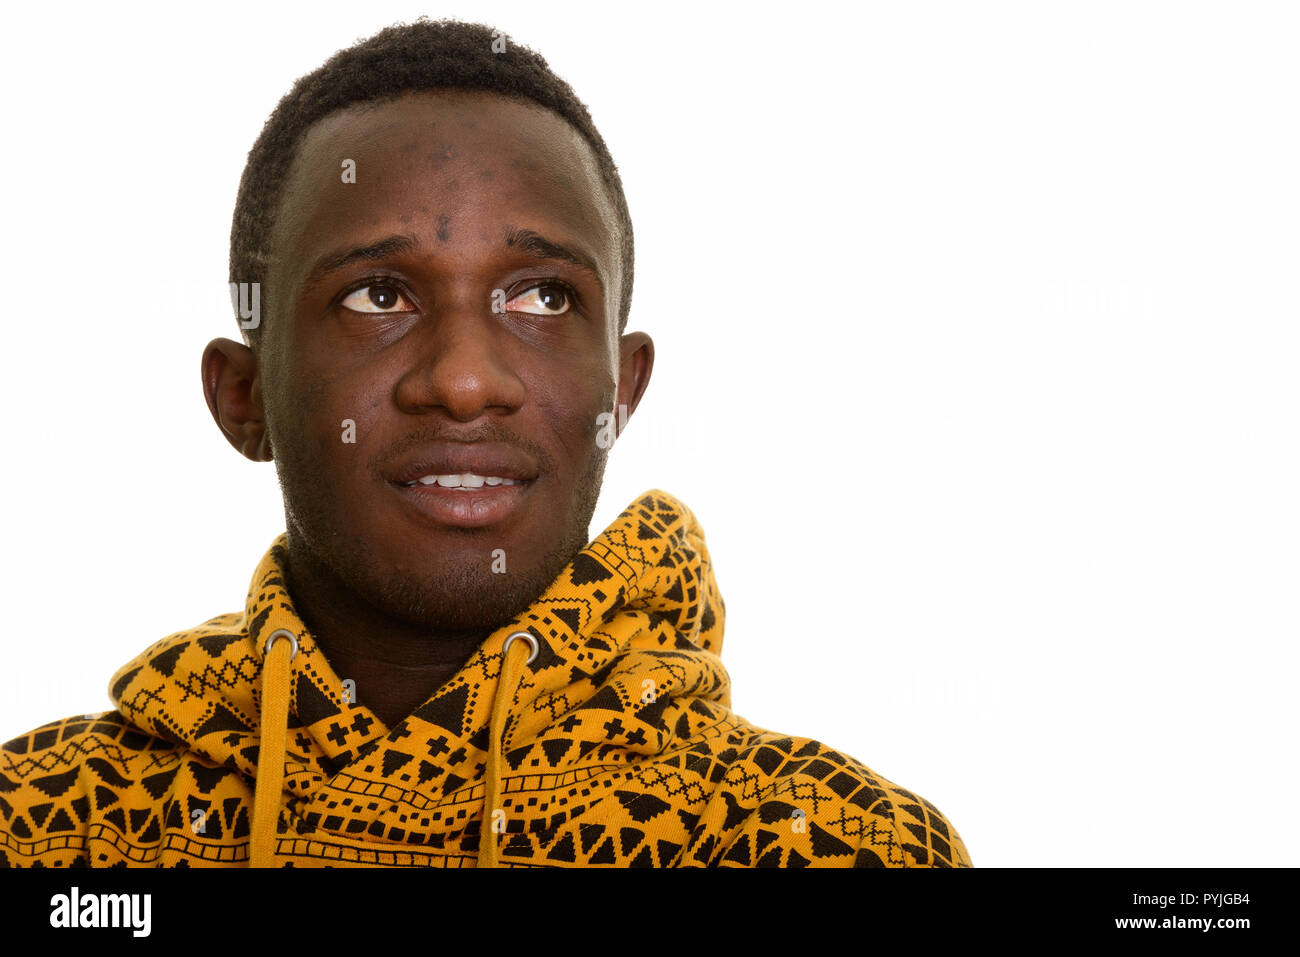 Les jeunes professionnels African man smiling en pensant Banque D'Images